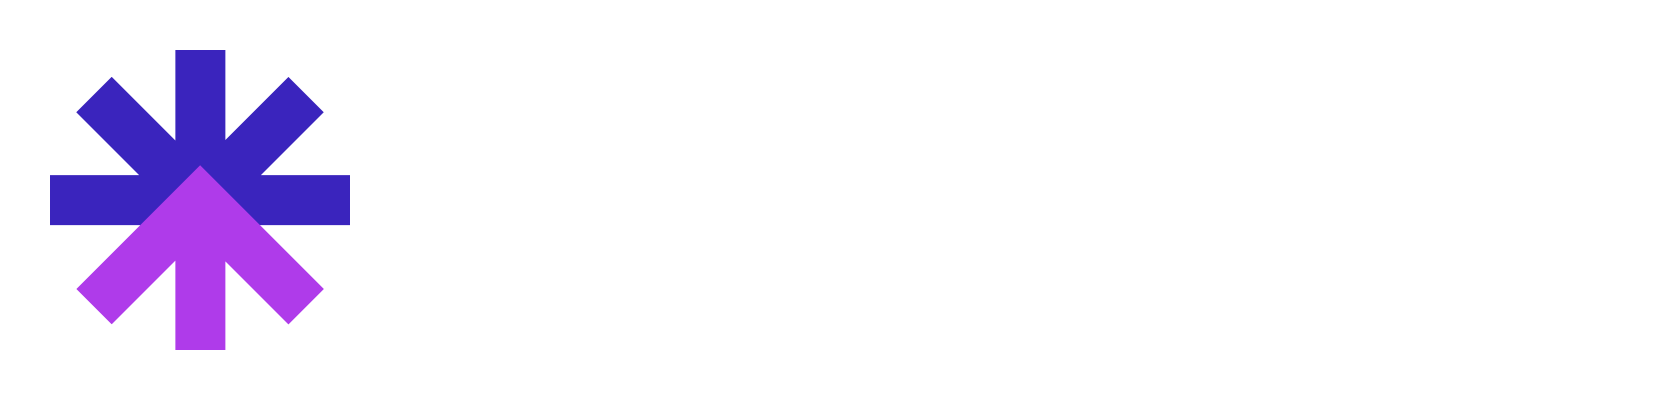 modelstar logo